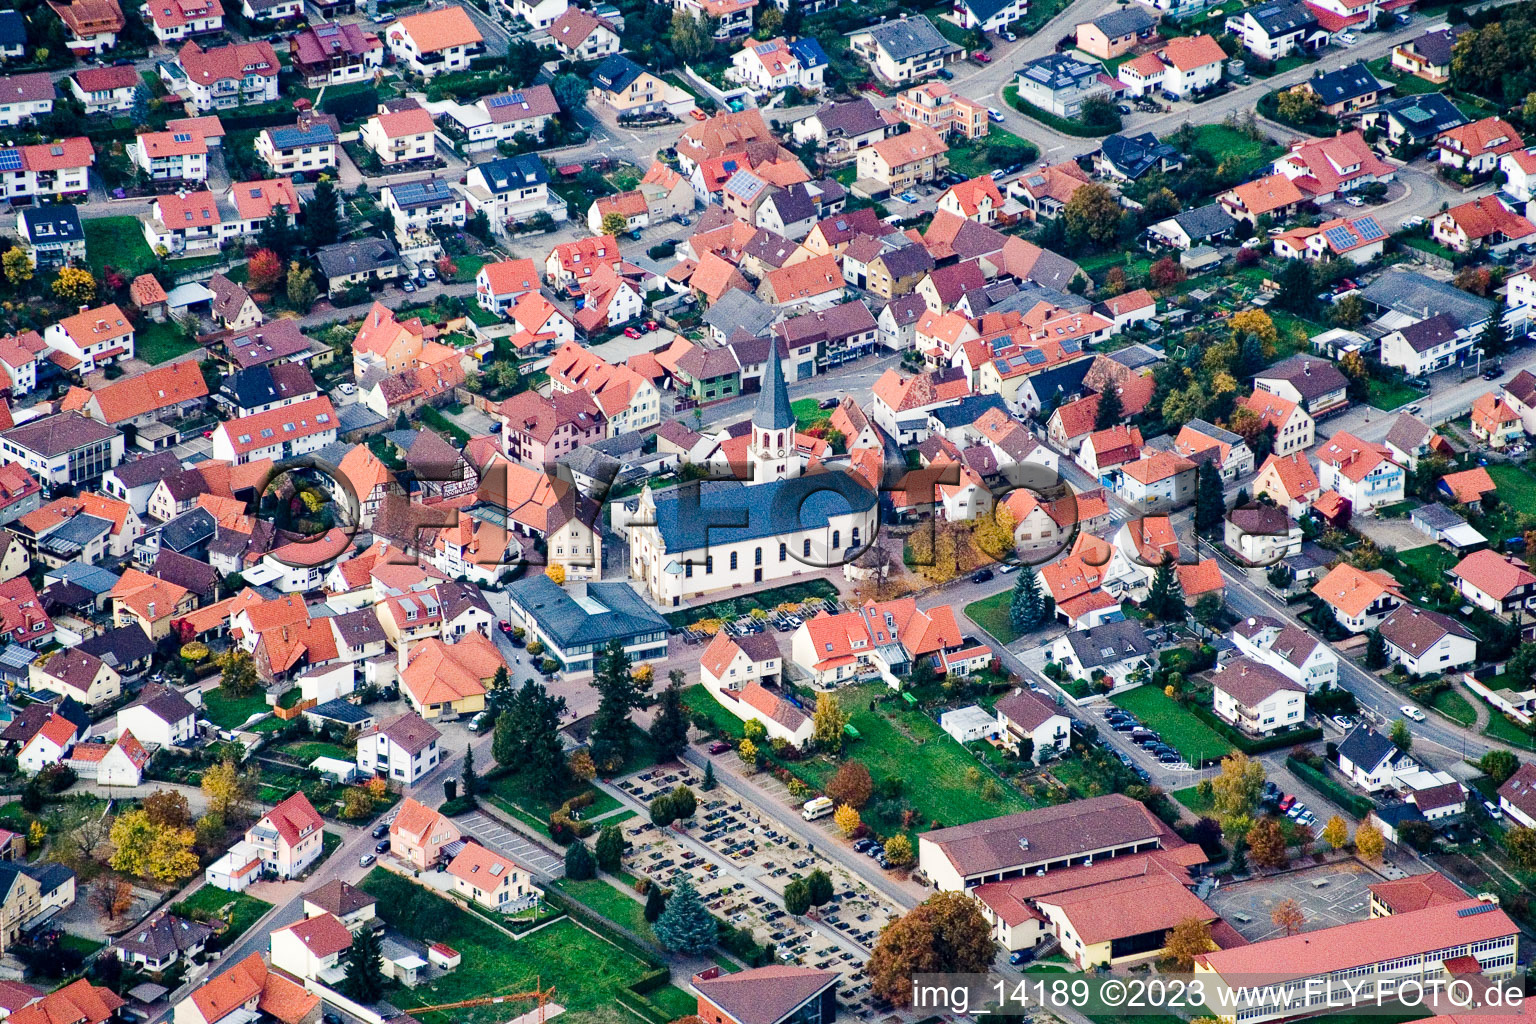 Vue aérienne de Sainte-Julienne à Malsch dans le département Bade-Wurtemberg, Allemagne